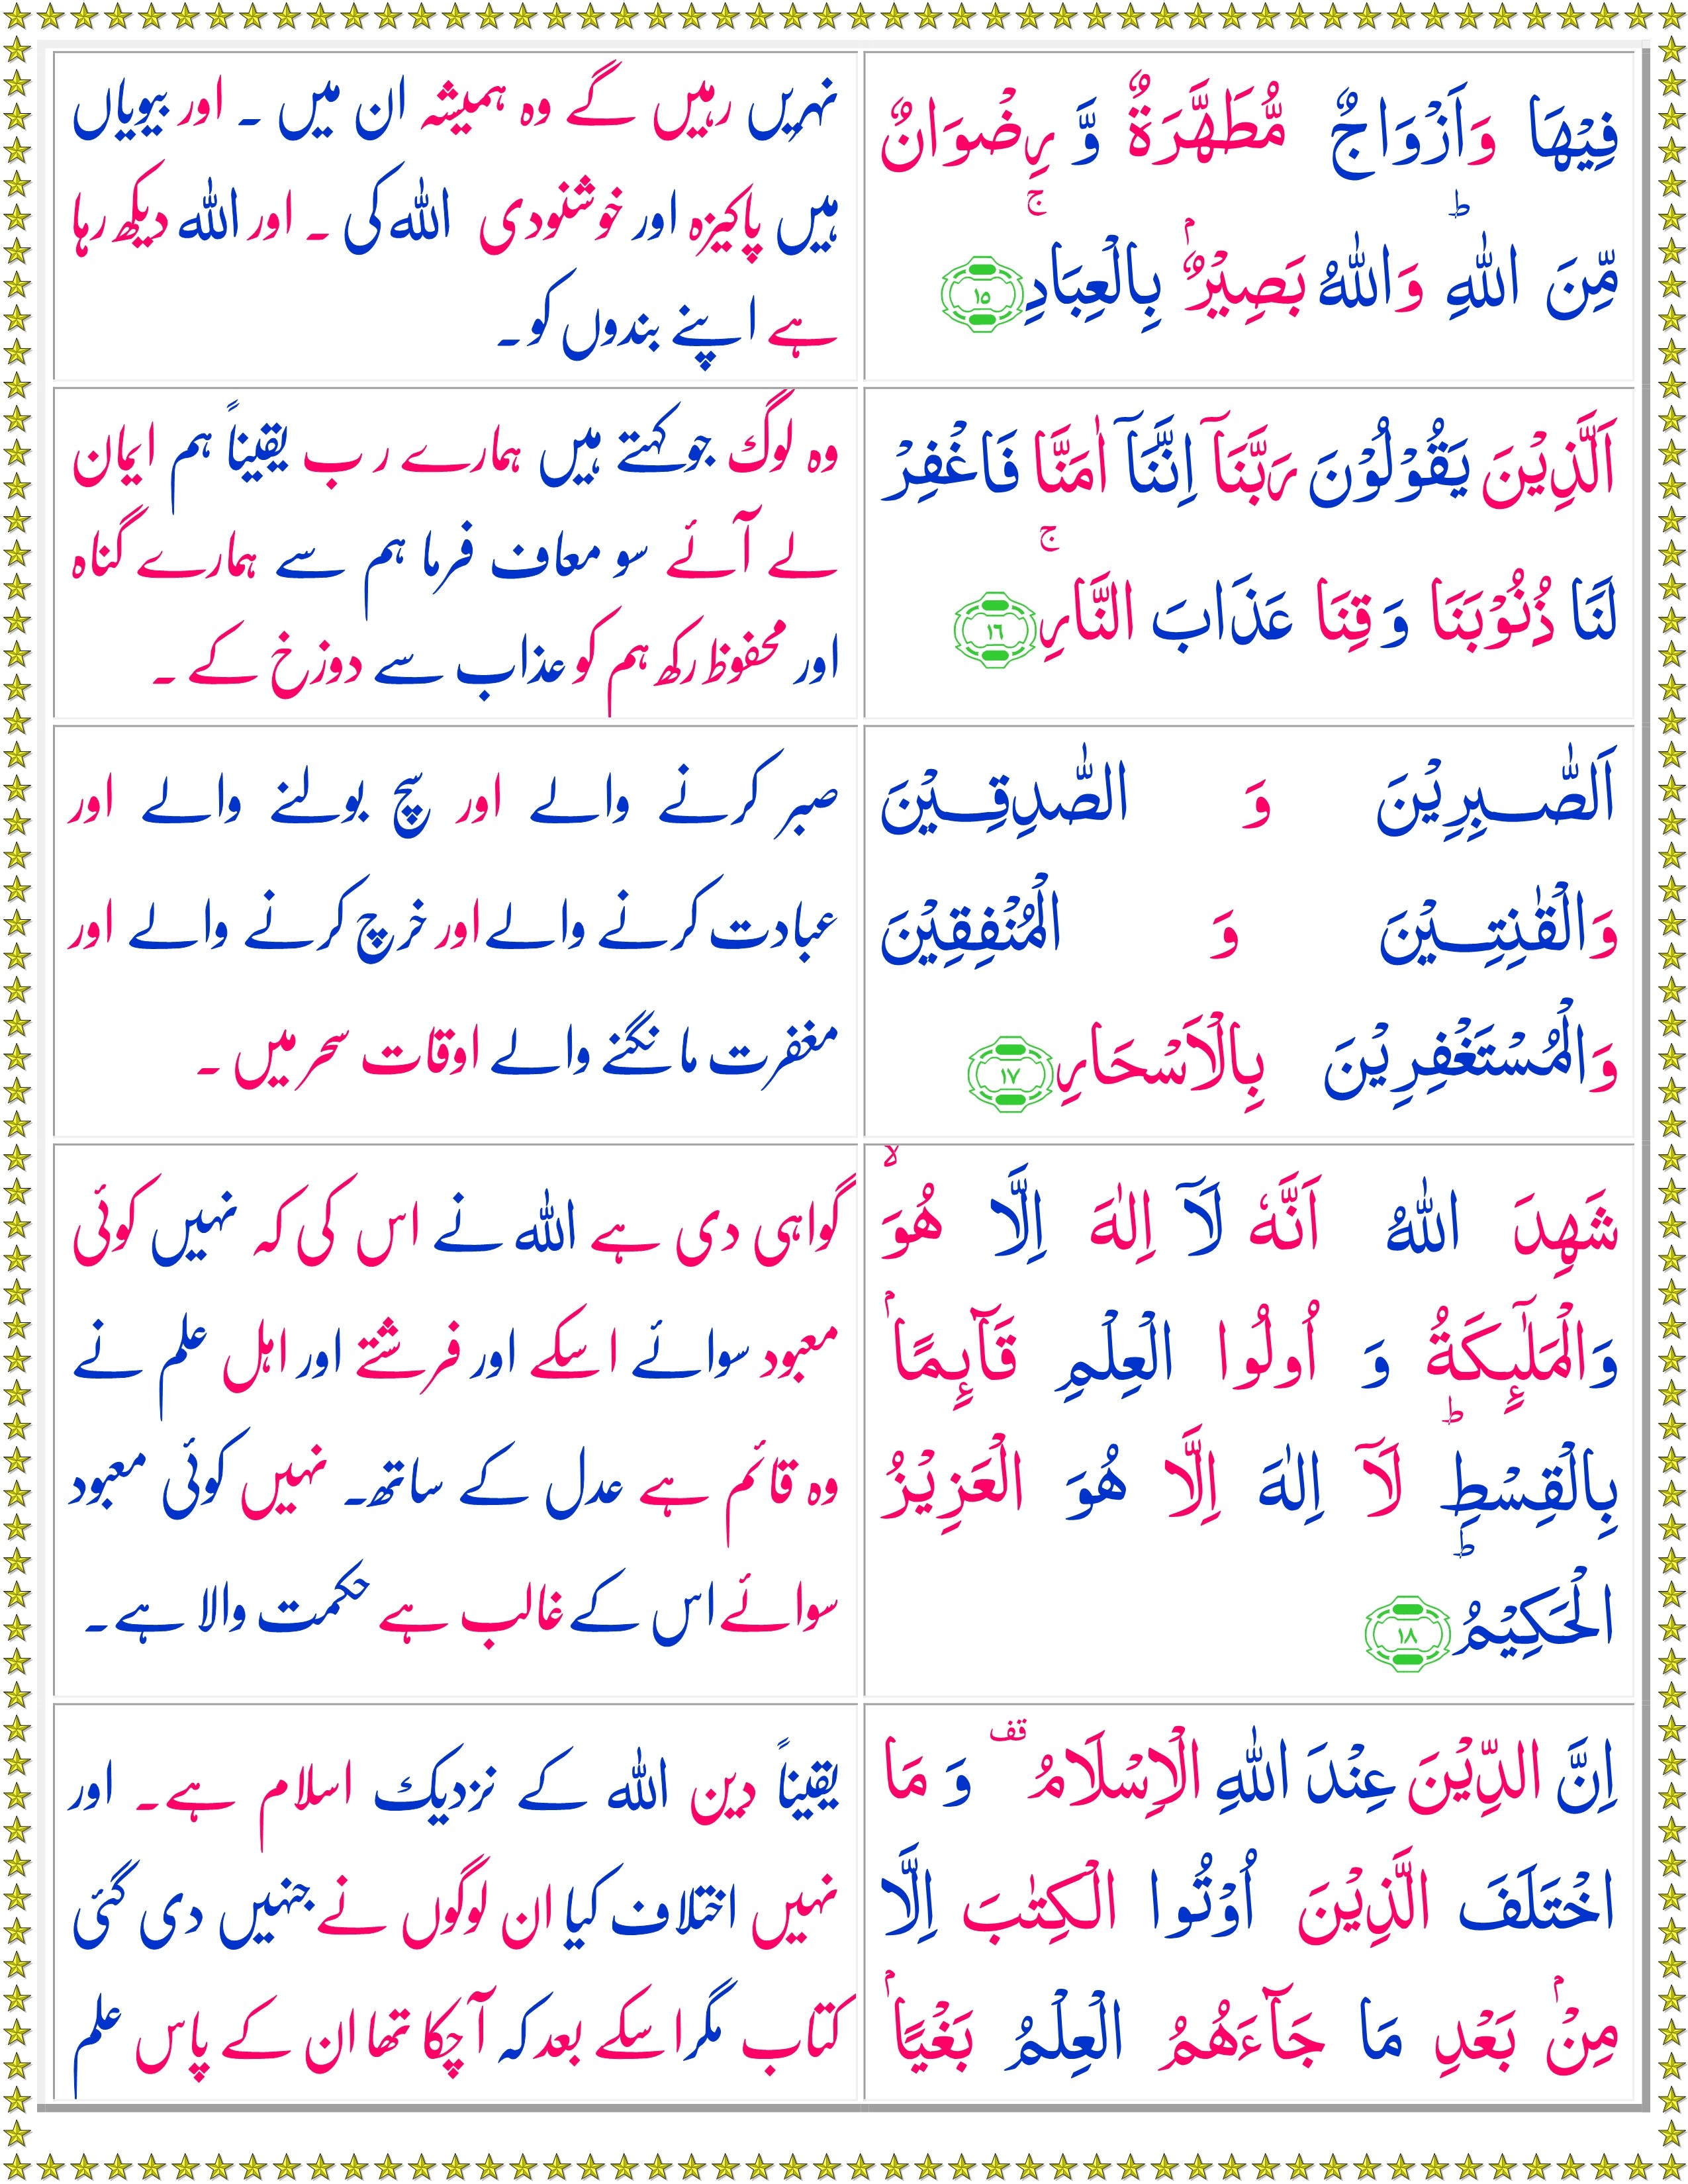 Surah Al Imran Urdu Quran O Sunnat